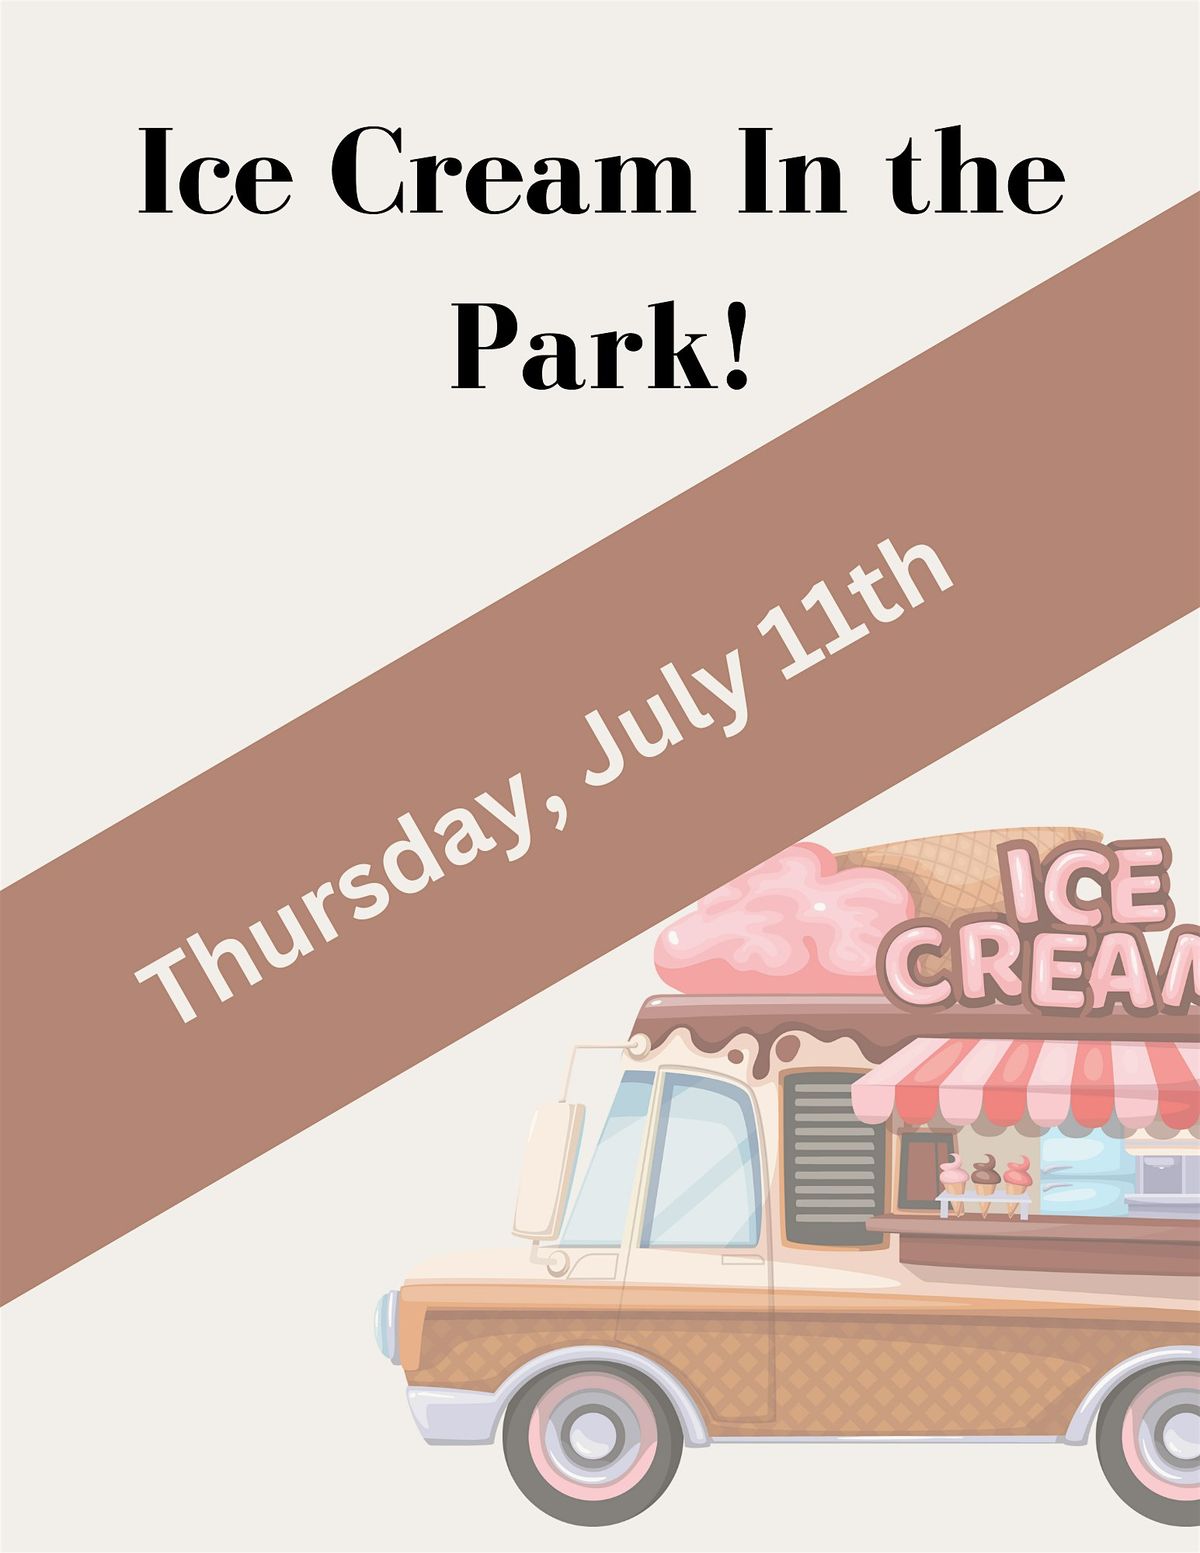 Ice Cream in the Park!